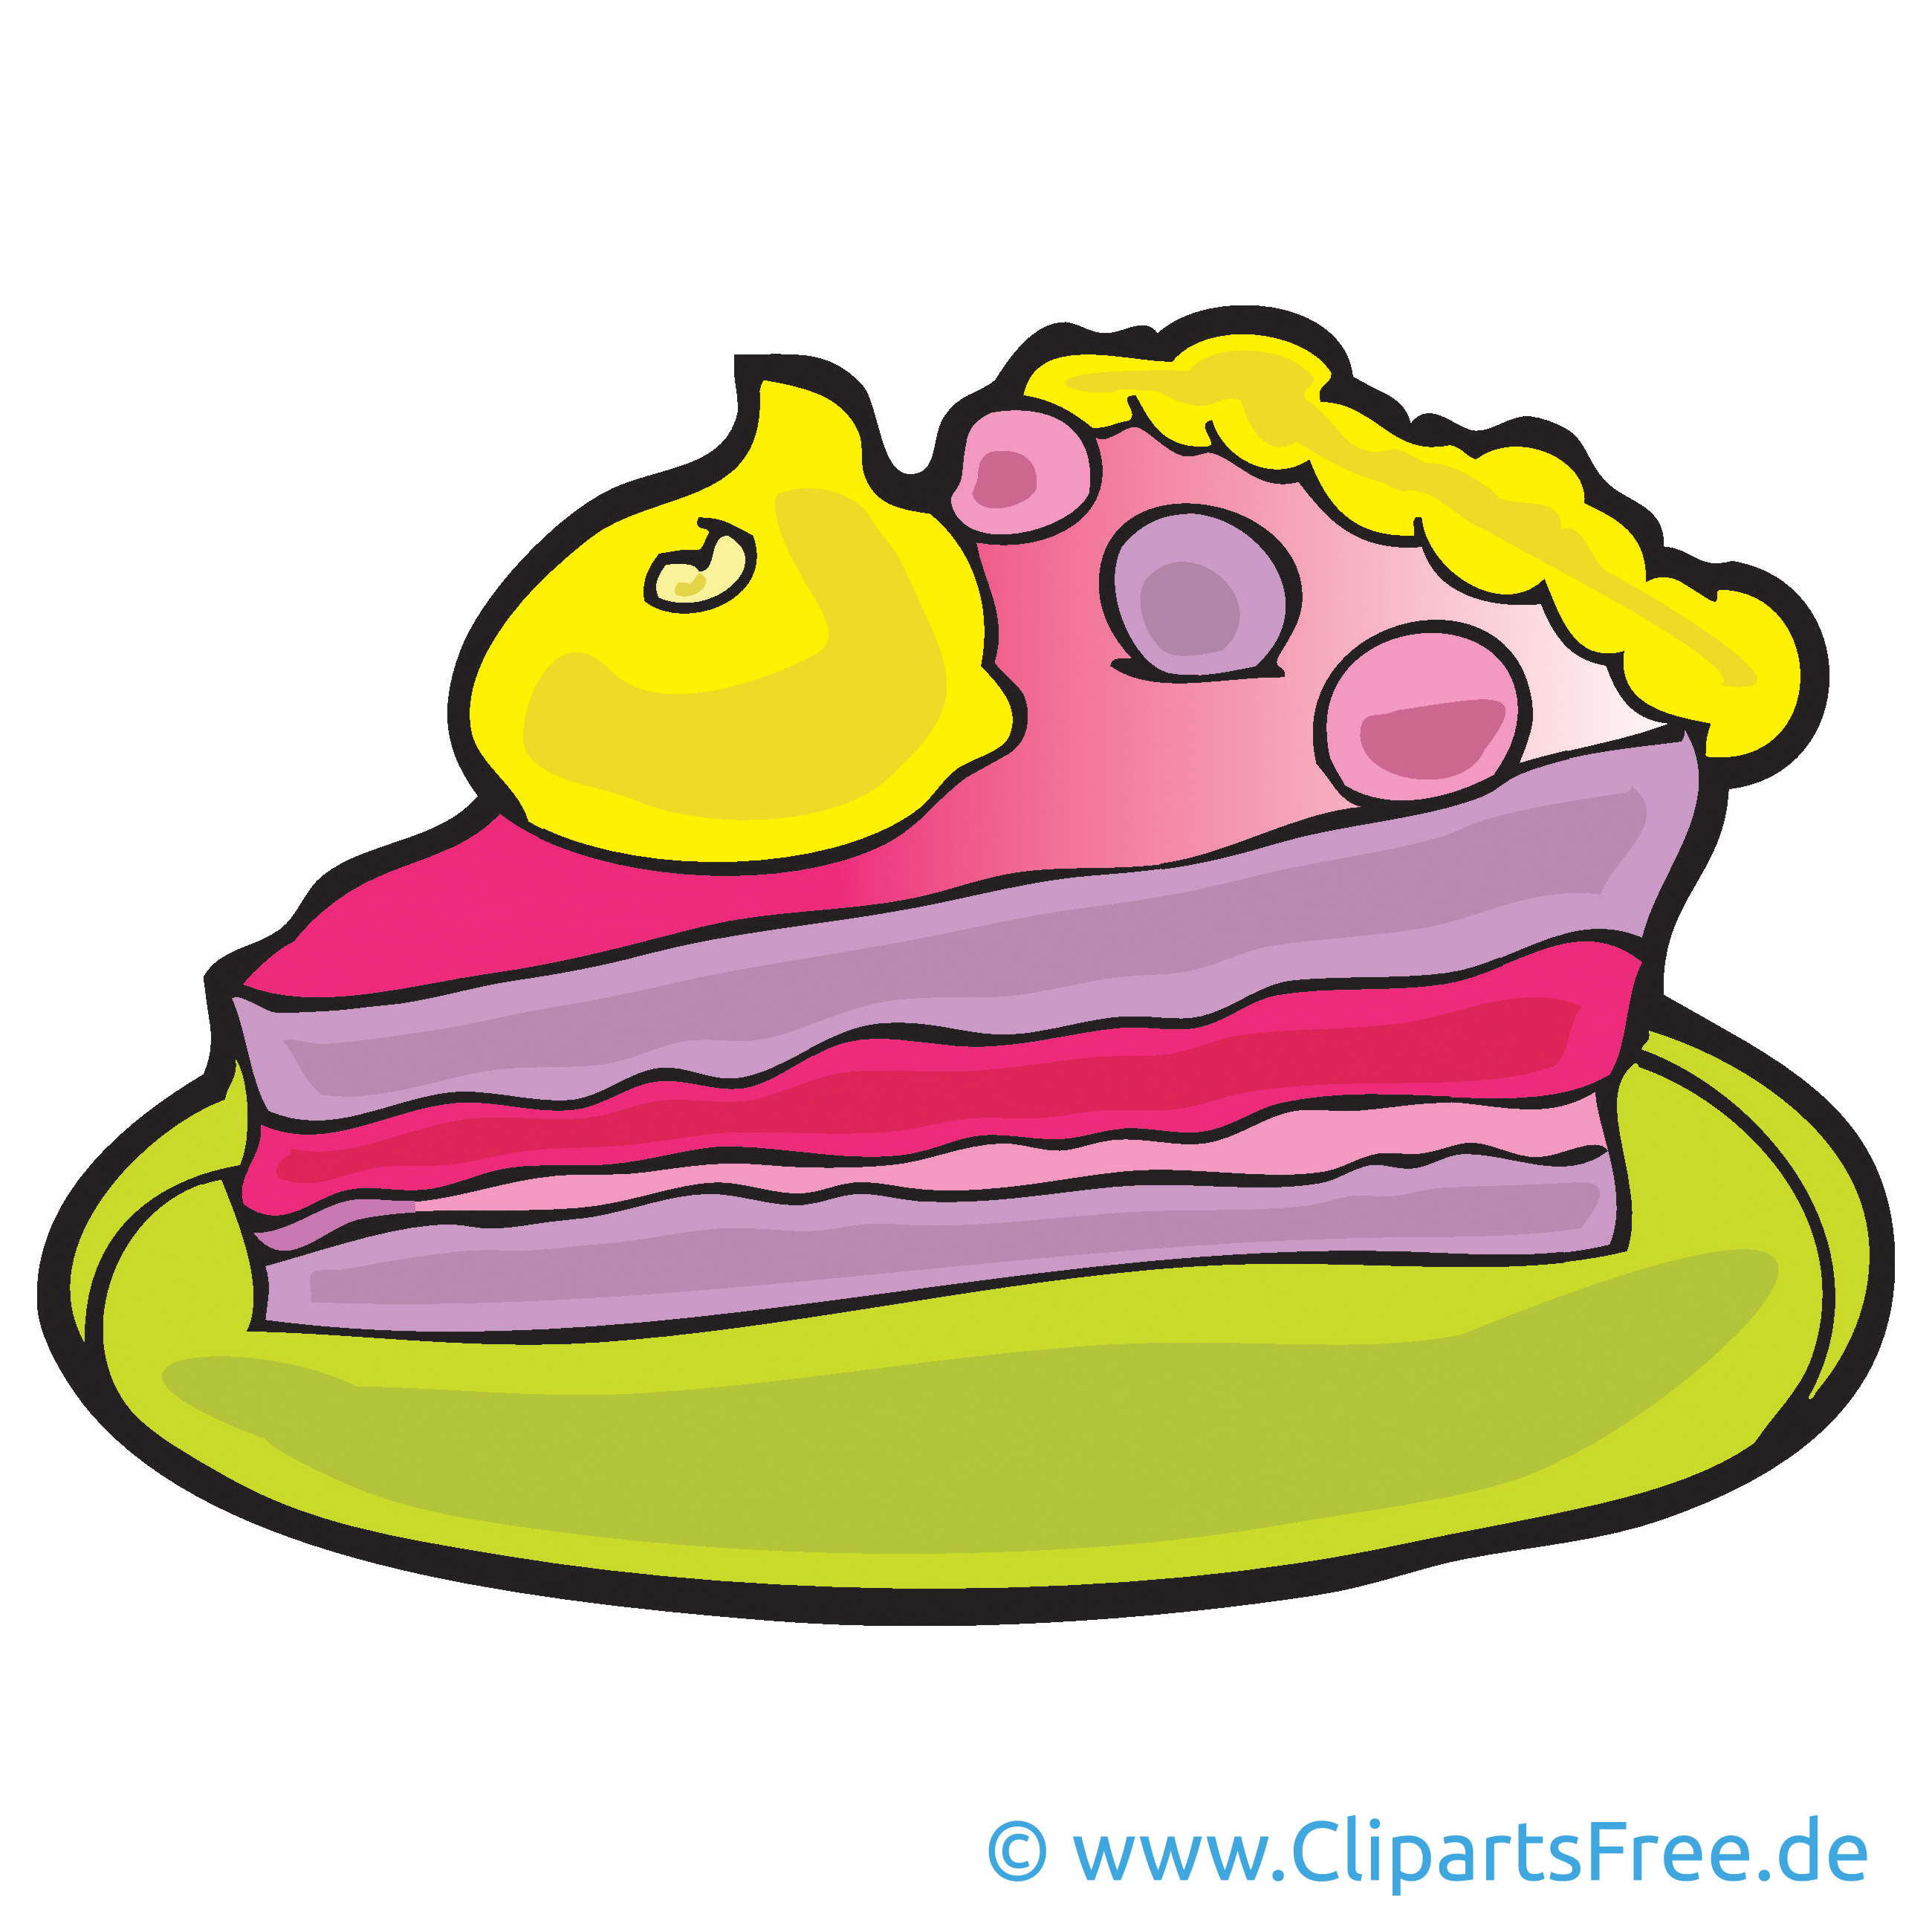 clipart kuchen torte - photo #6